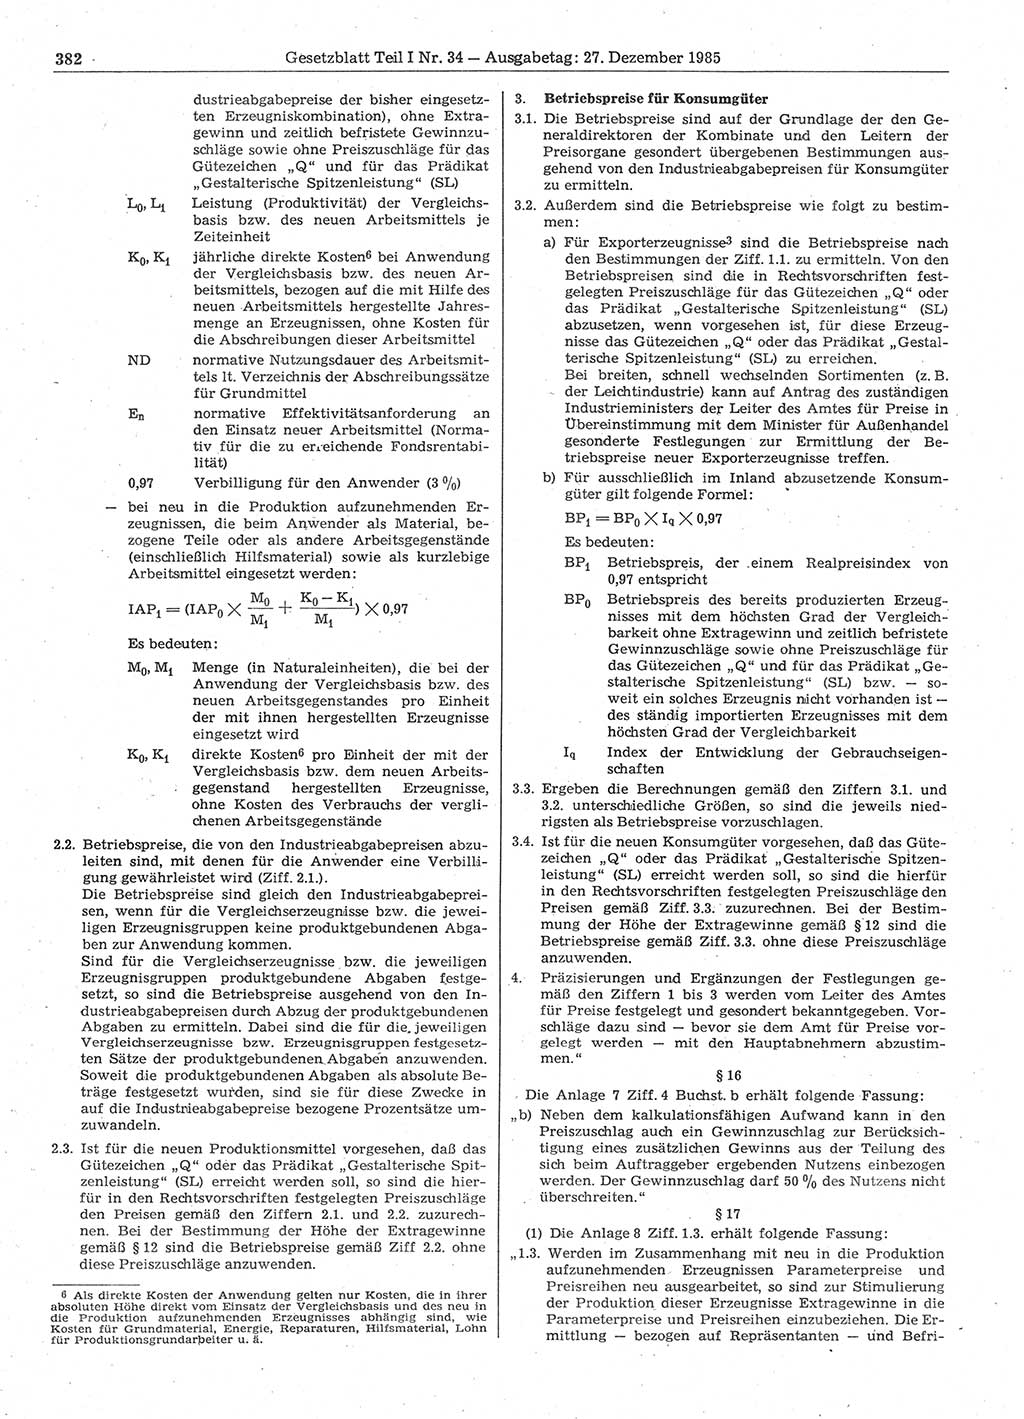 Gesetzblatt (GBl.) der Deutschen Demokratischen Republik (DDR) Teil Ⅰ 1985, Seite 382 (GBl. DDR Ⅰ 1985, S. 382)